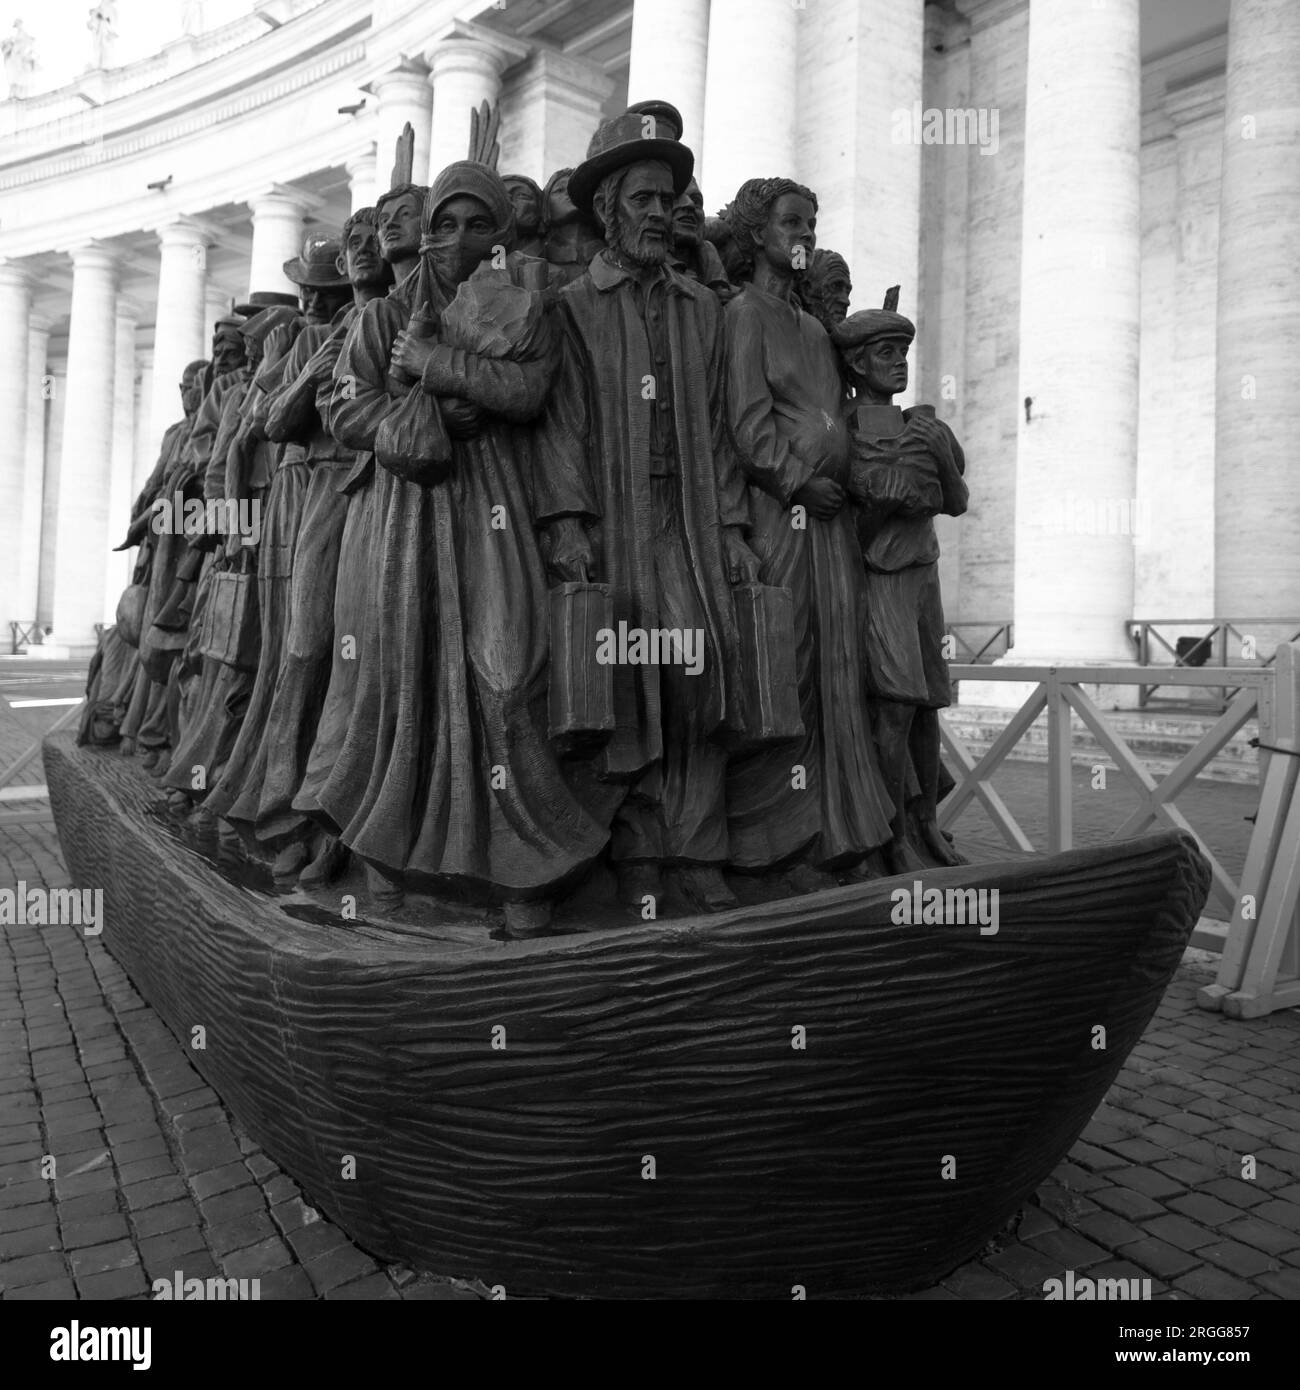 Une sculpture en bronze de Timothy Schmalz appelée 'Angels unawares' - installée à St. Place Pierre en 2019 pour la Journée mondiale des migrants et des réfugiés. Banque D'Images